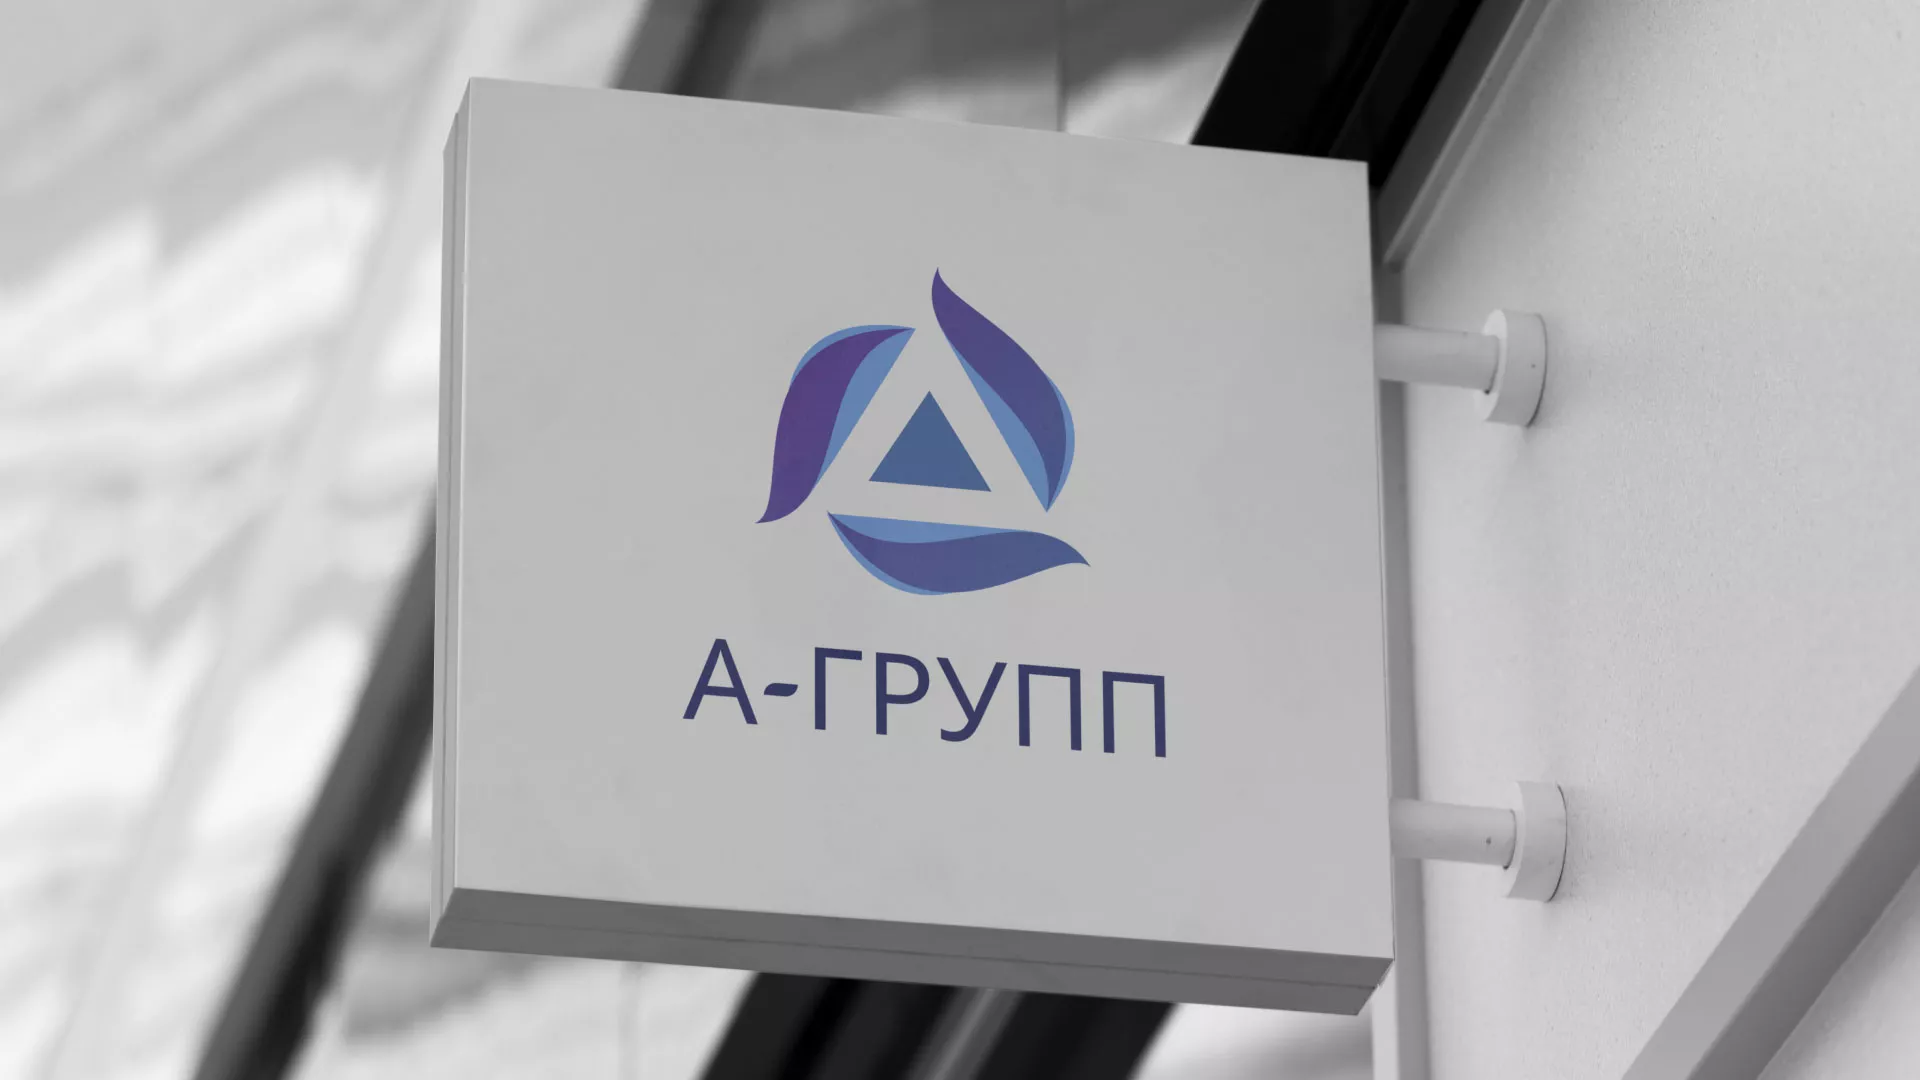 Создание логотипа компании «А-ГРУПП» в Усть-Лабинске